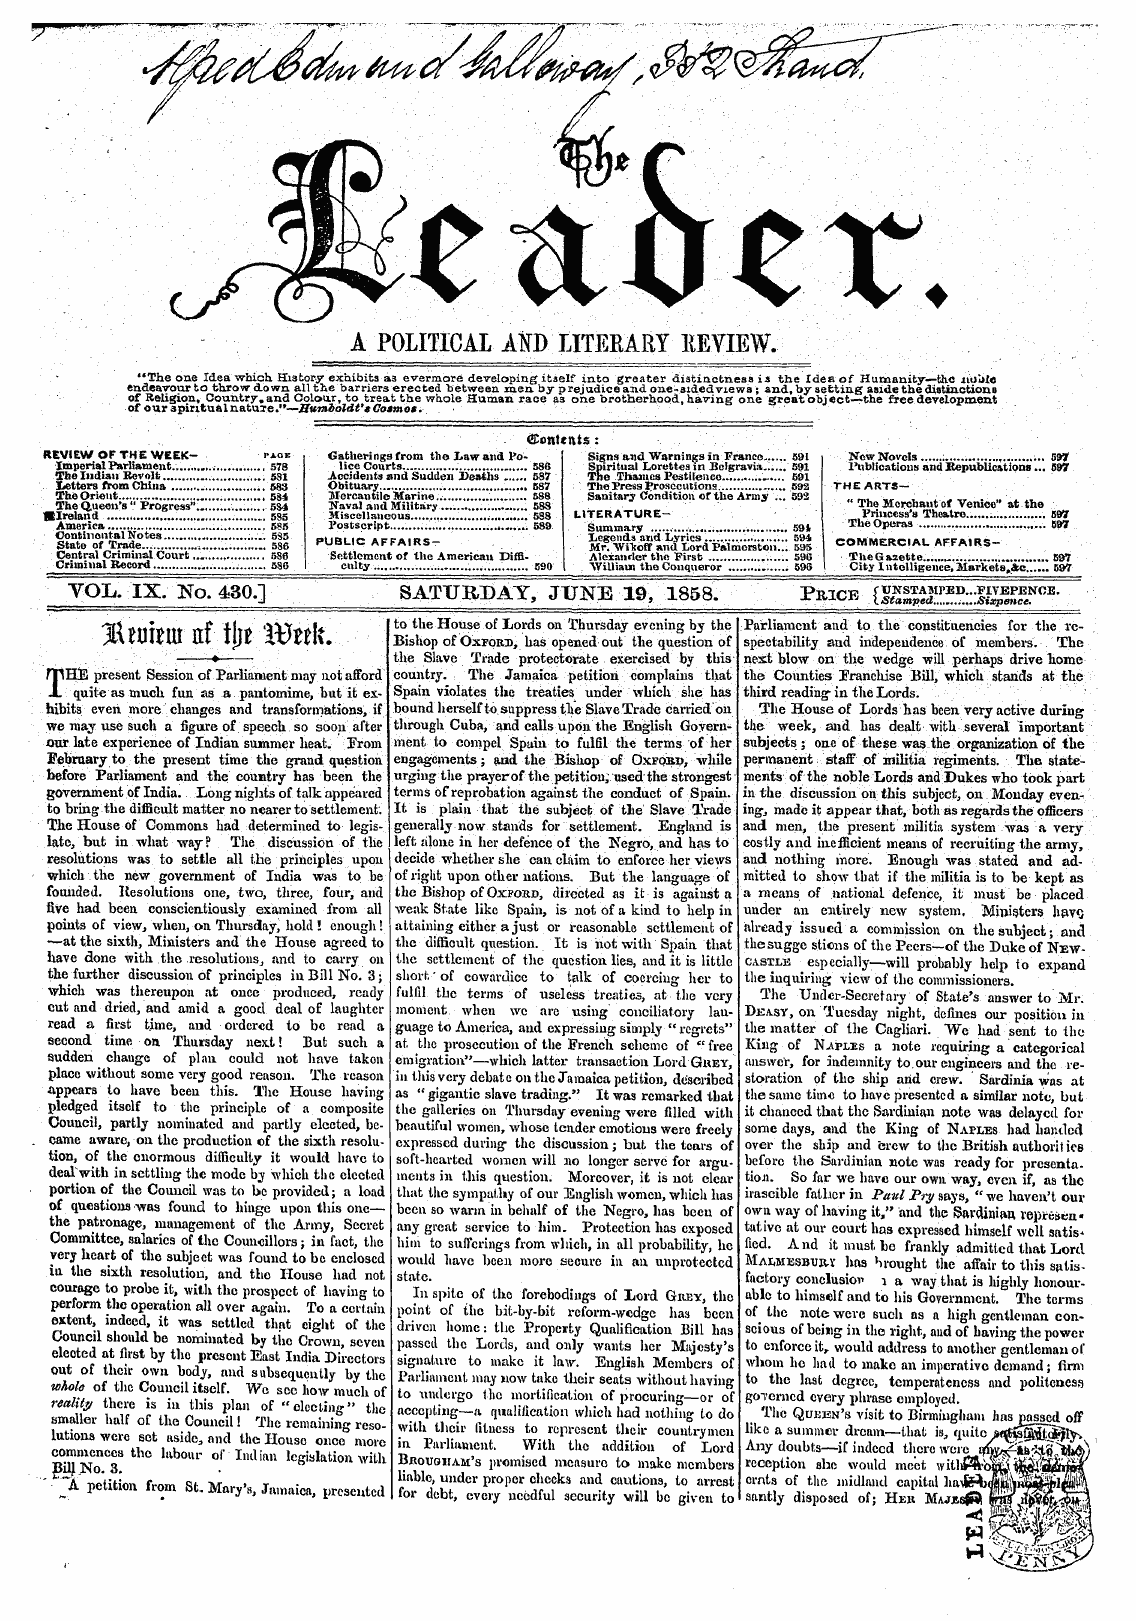 Leader (1850-1860): jS F Y, 2nd edition - Vol. Ix. No. 430.] Saturday, June 19, 18...